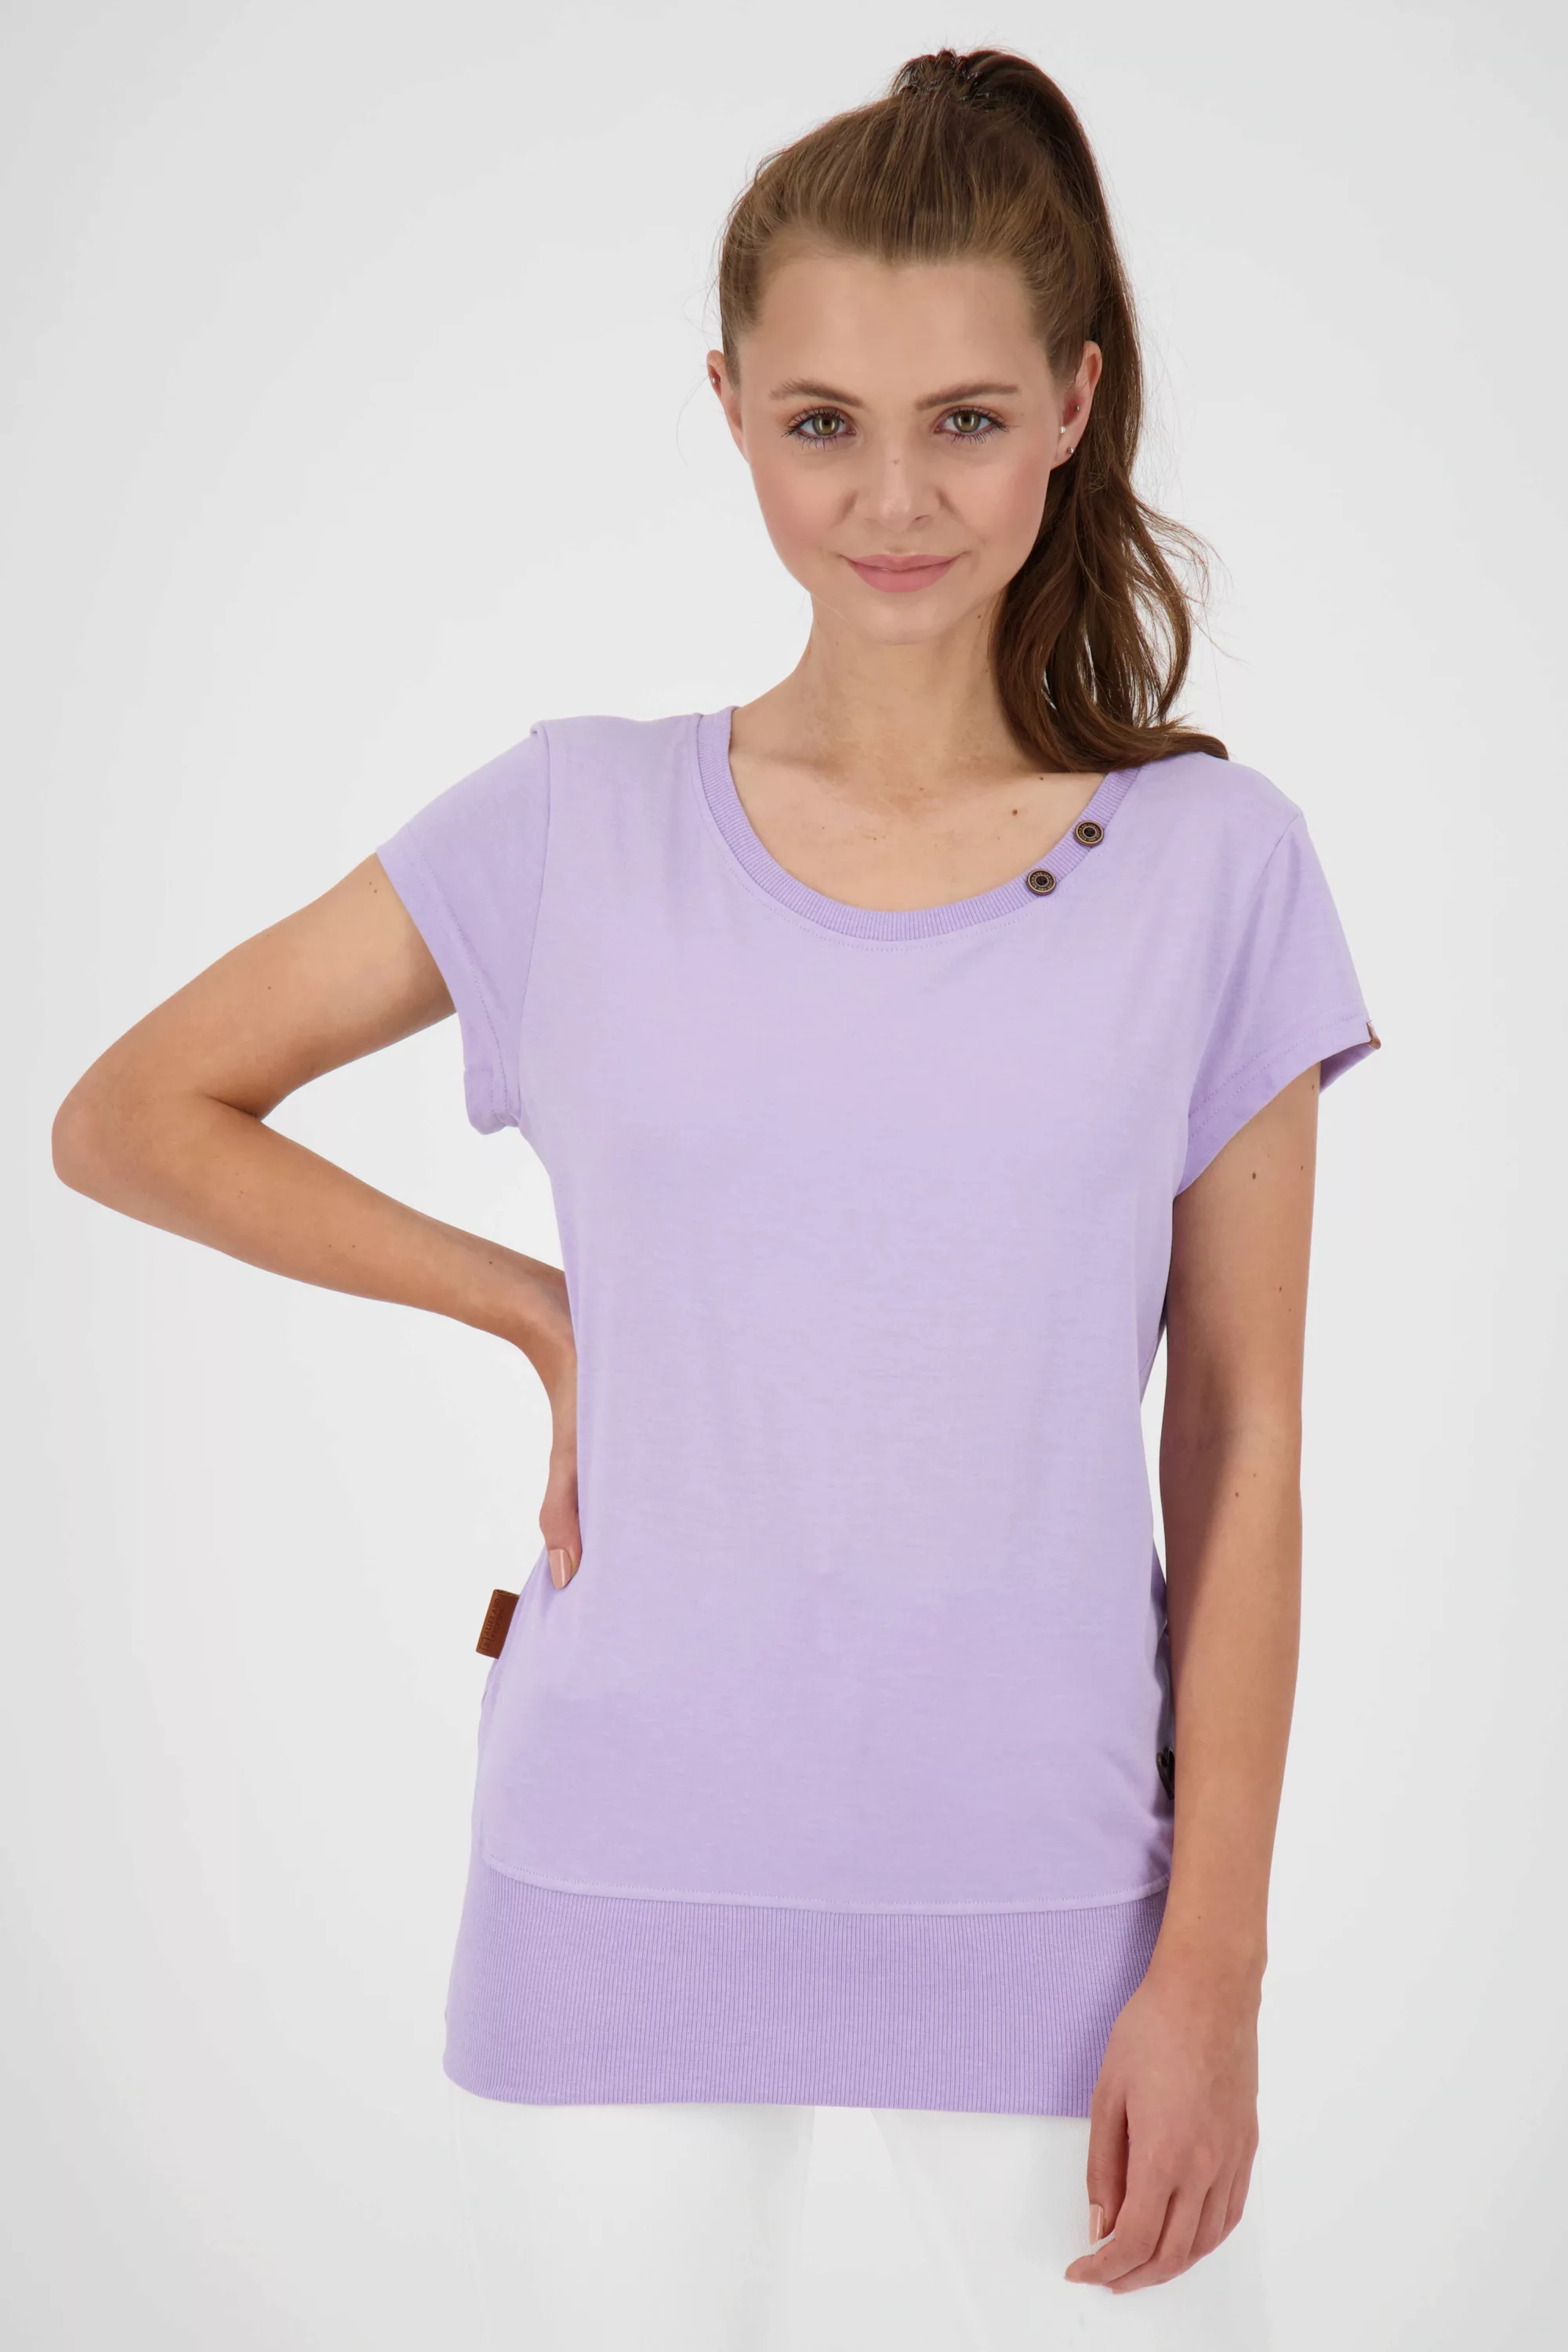 Alife & Kickin T-Shirt "CocoAK A Shirt Damen T-Shirt" günstig online kaufen